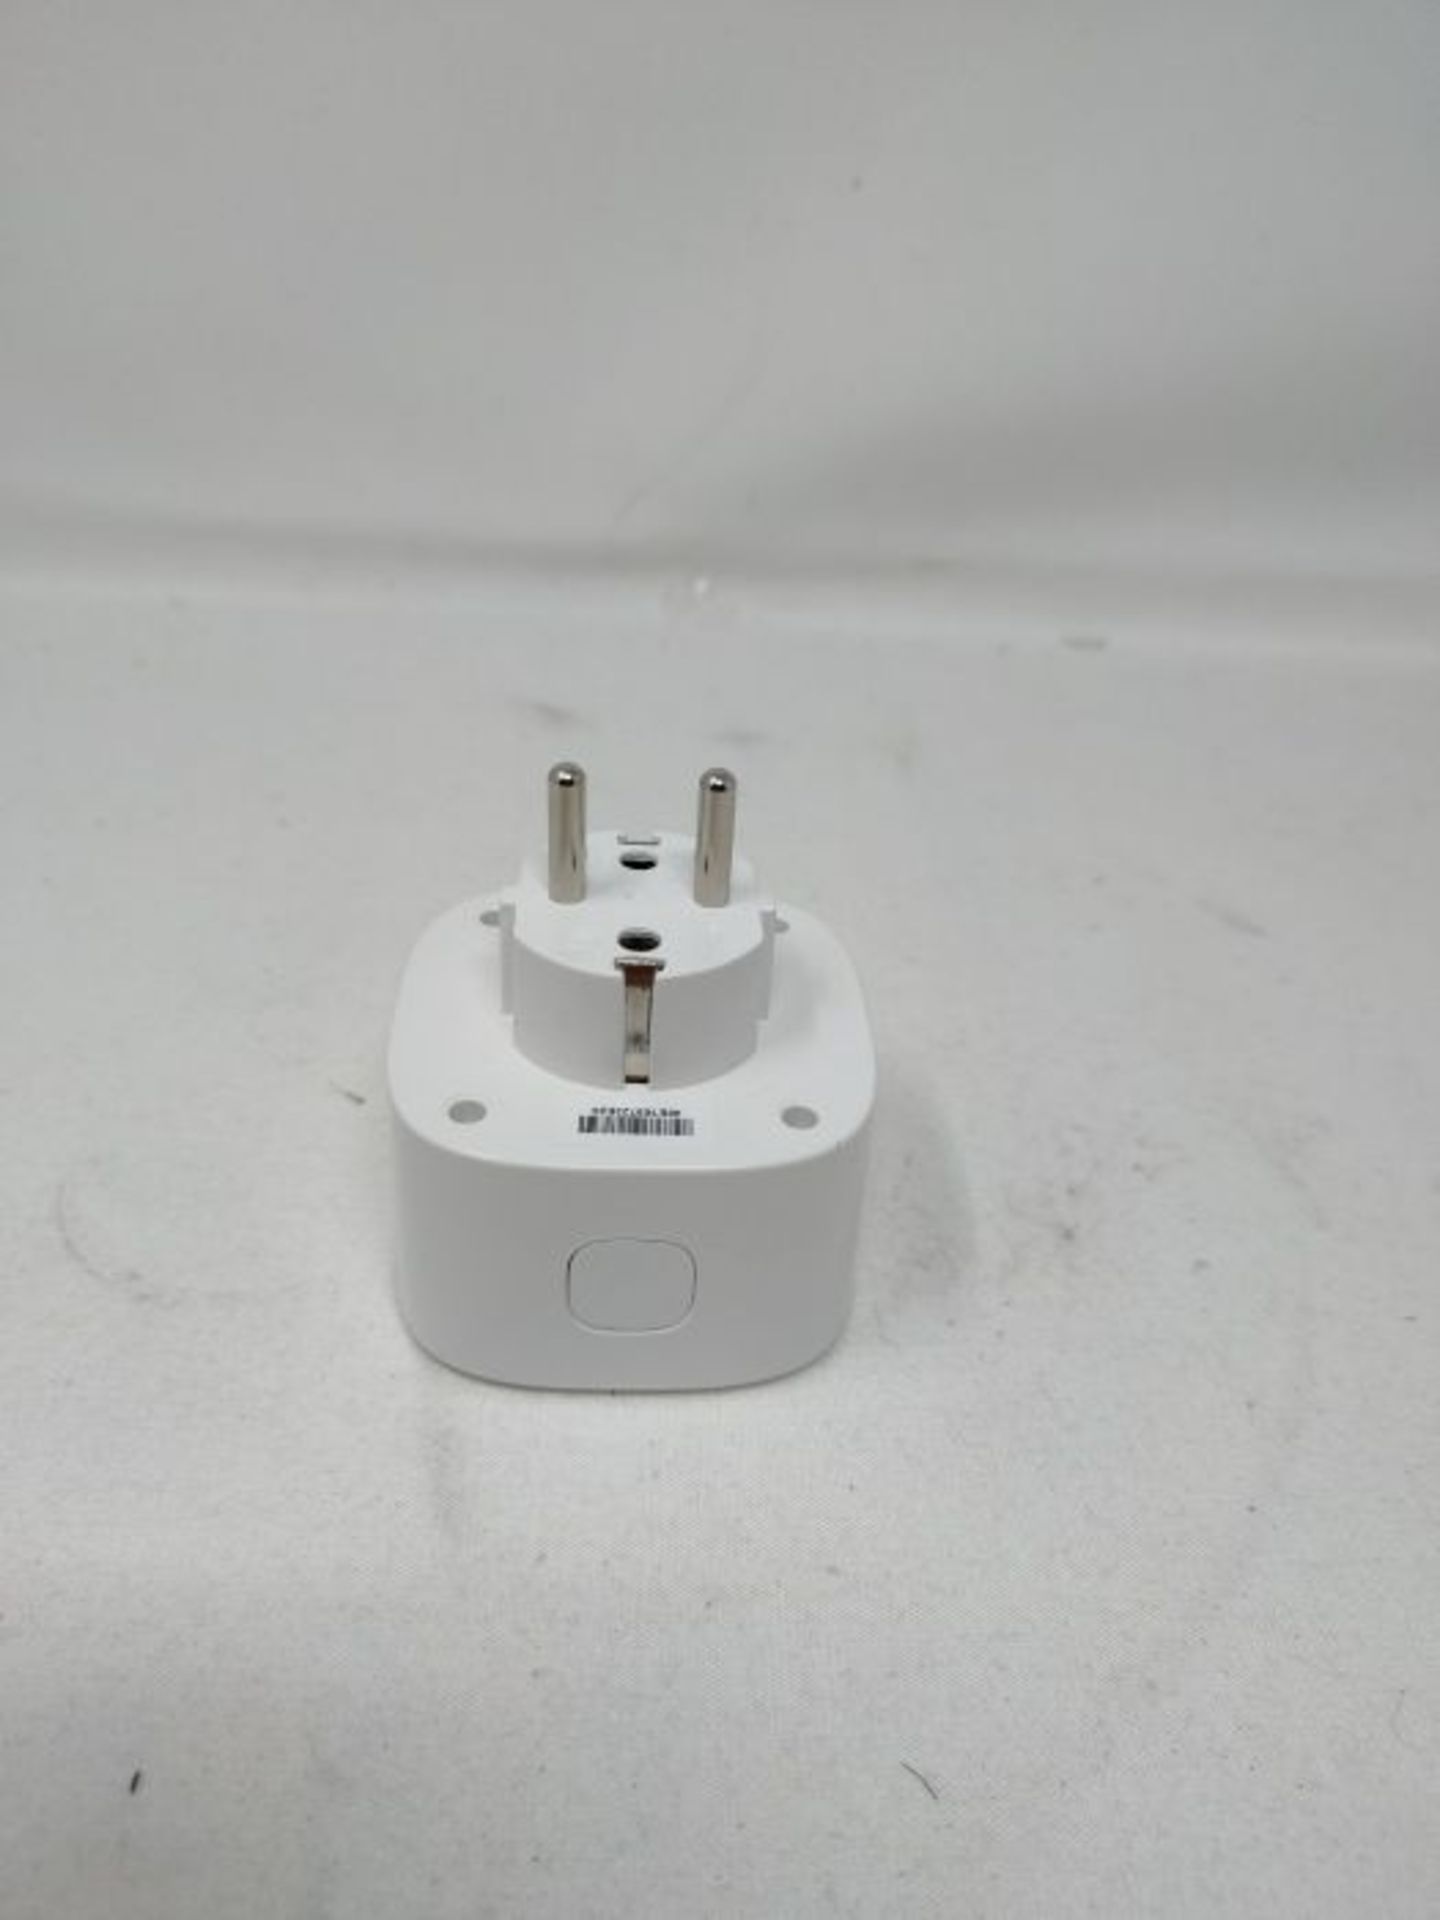 WLAN socket works with Apple HomeKit, meross Smart Plug, compatible with Siri, Alexa, - Image 4 of 4